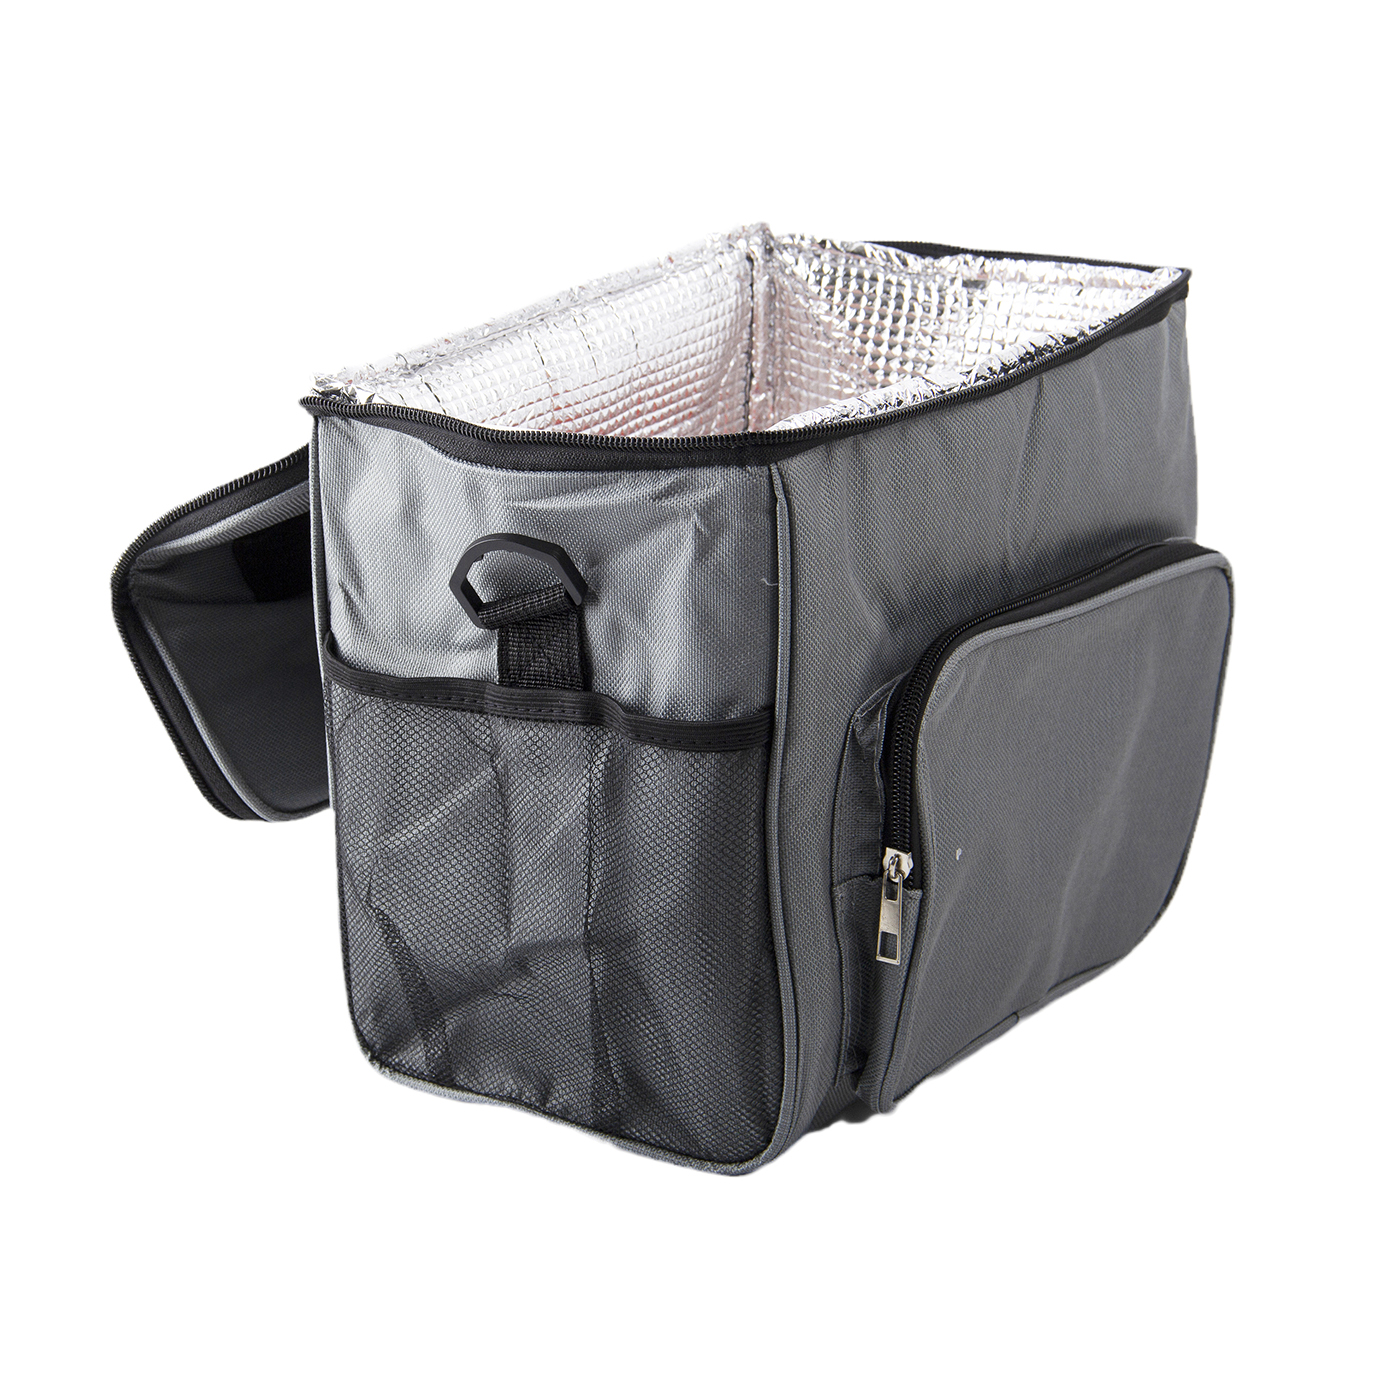 Insulated Cooler Bag With Adjustable Shoulder Strap3